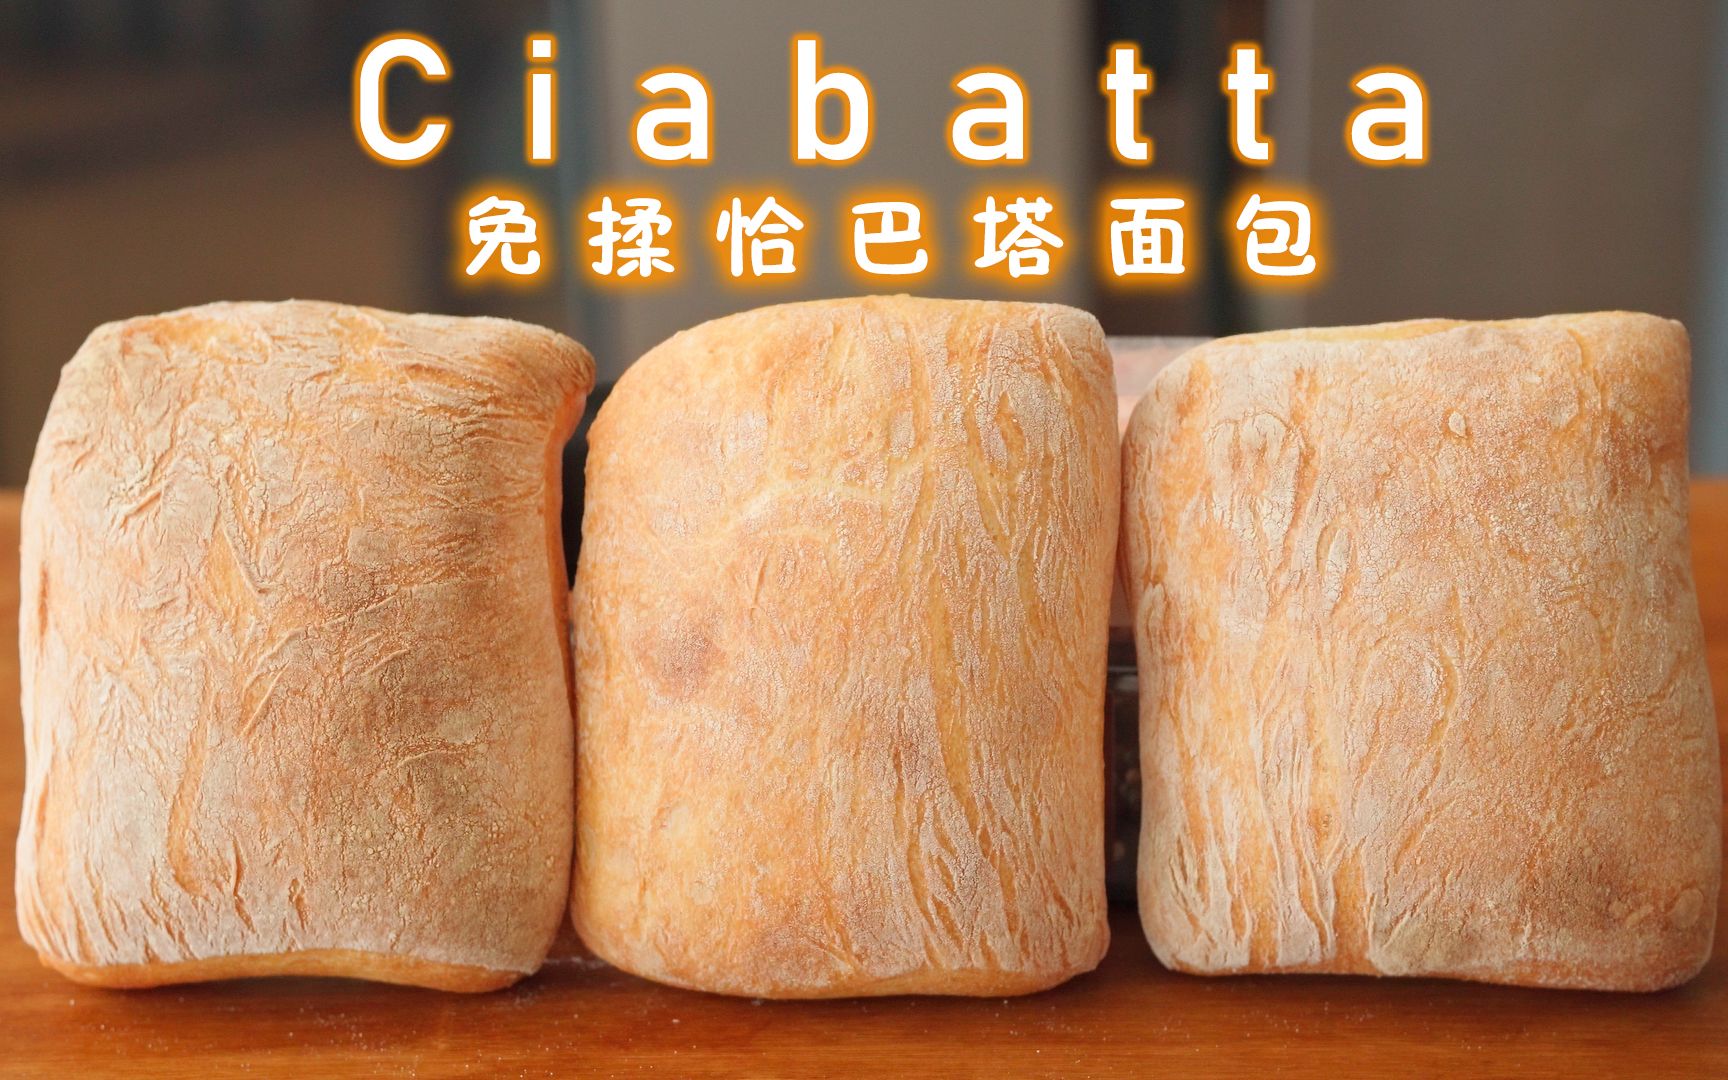 意大利最经典的【脆皮面包】-恰巴塔！俗称：拖鞋面包~_面团